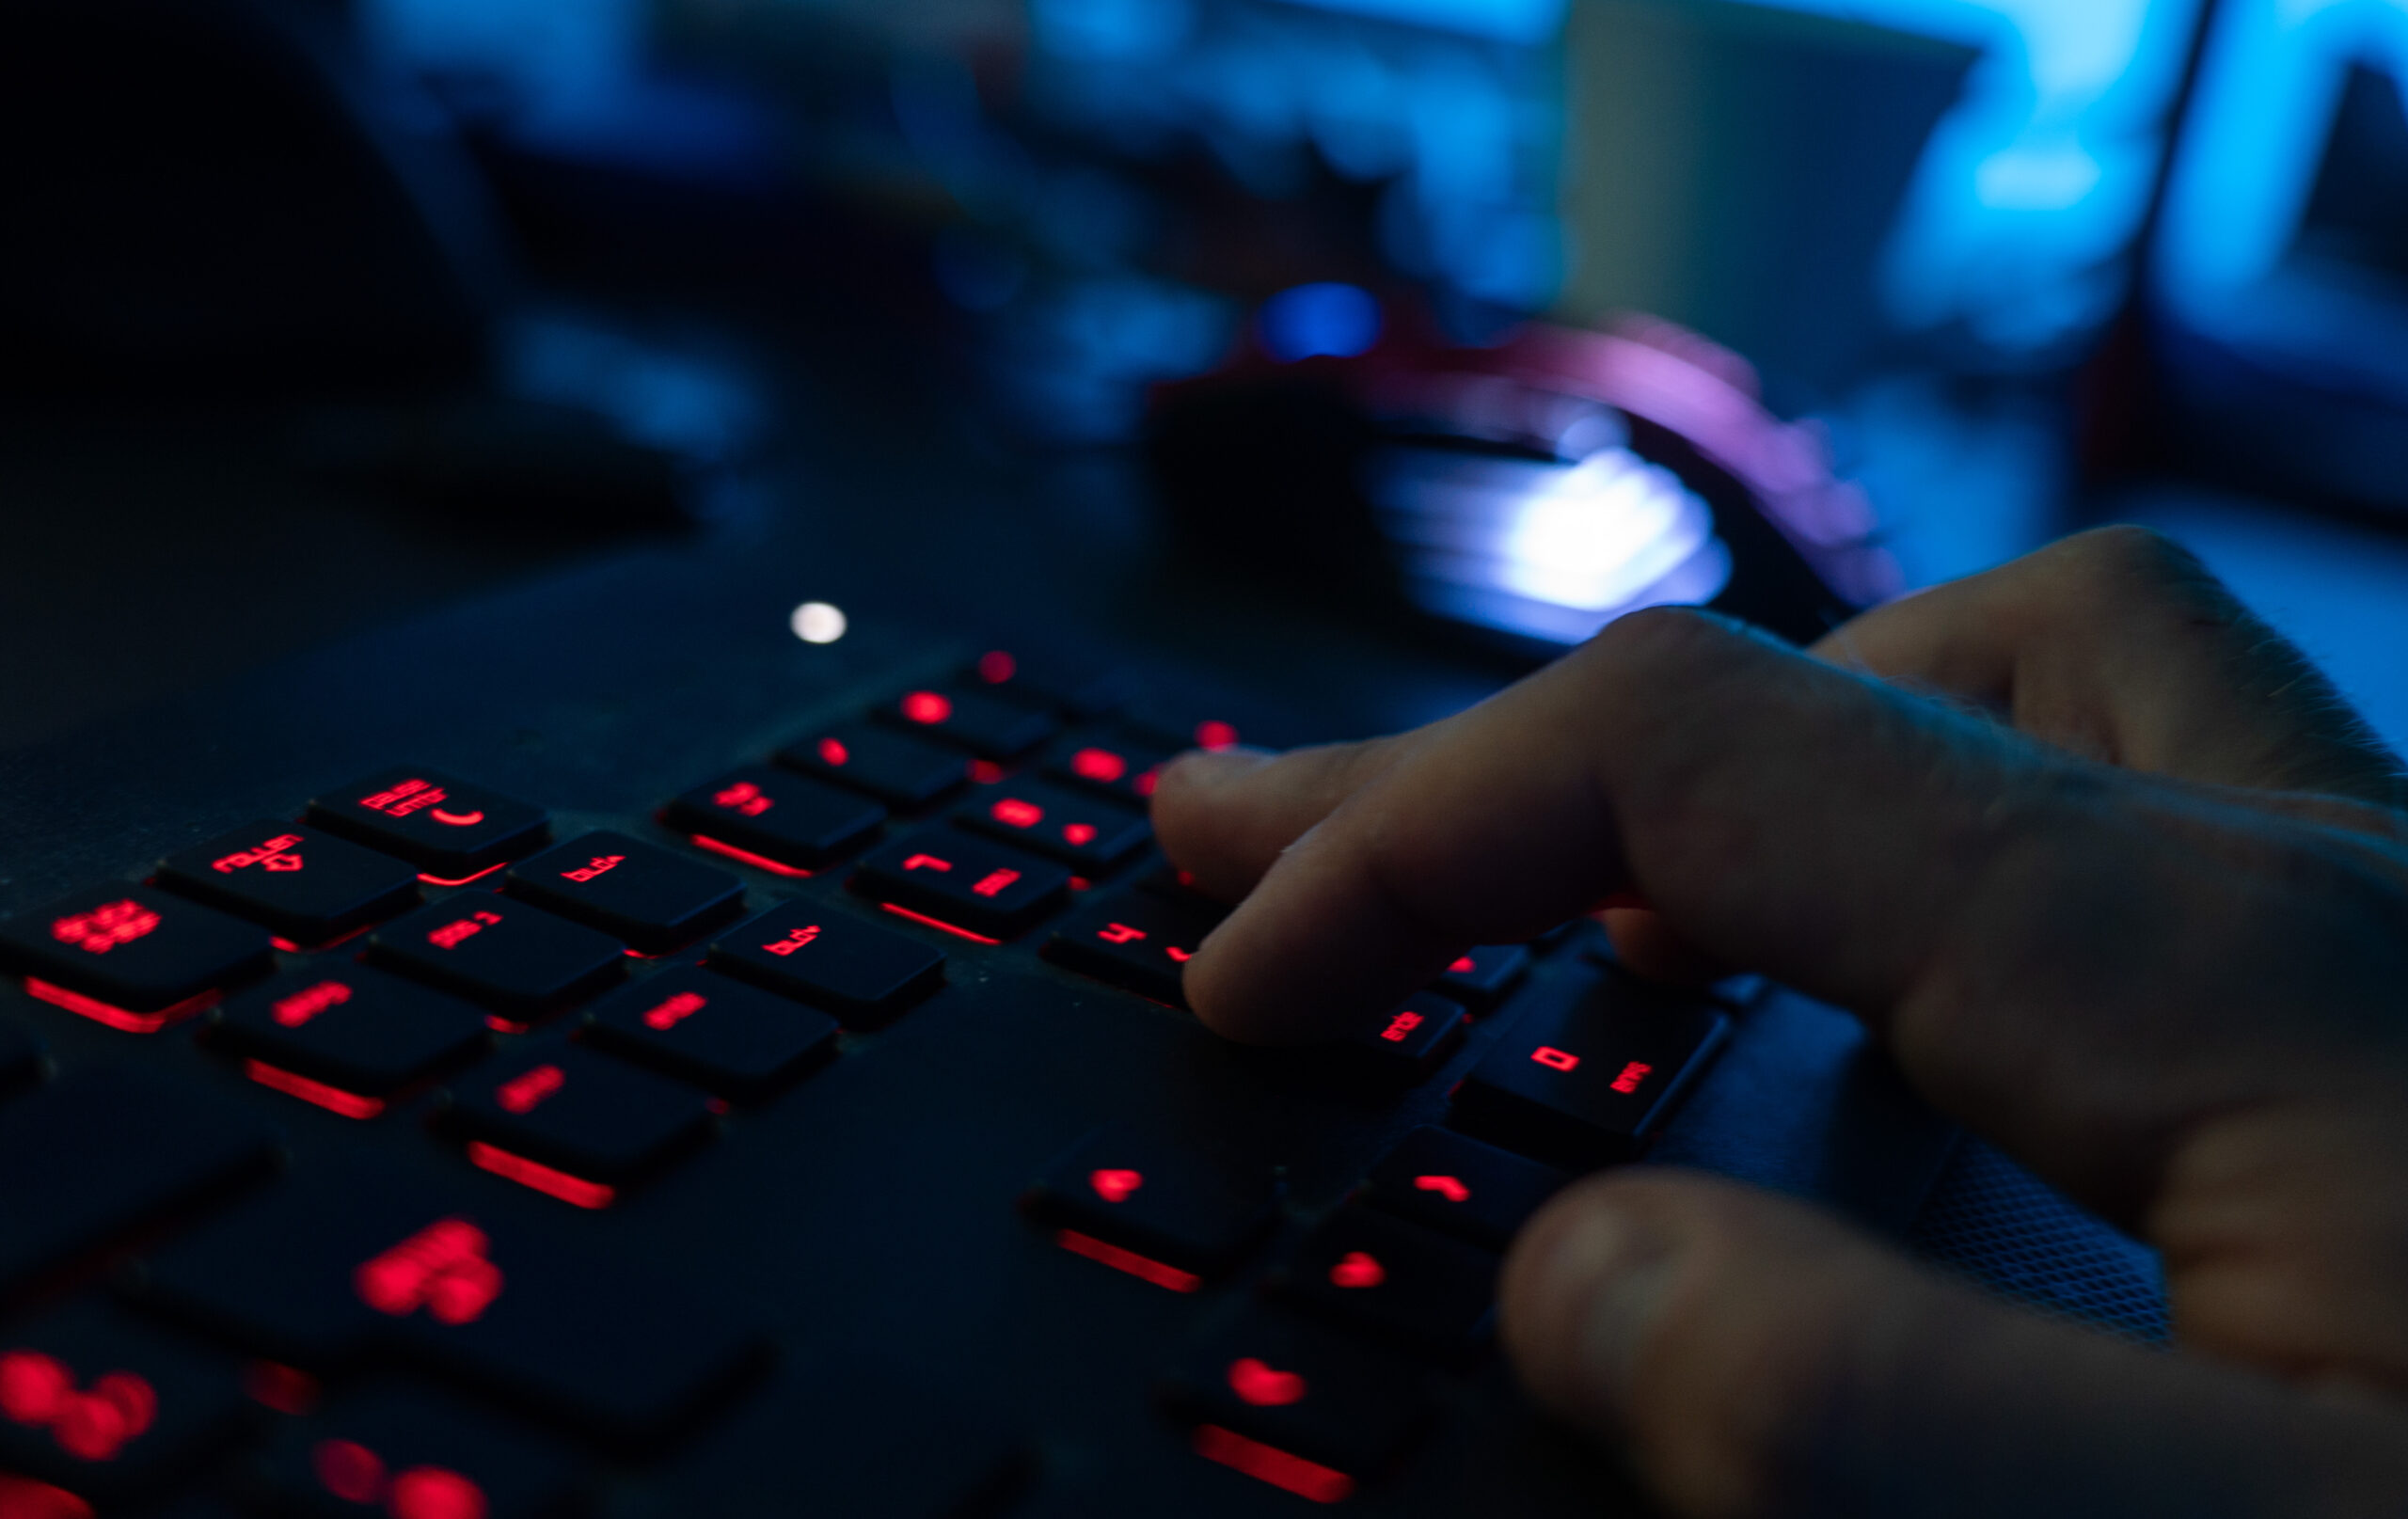 Ein Mann sitzt am Rechner und tippt auf einer Tastatur.